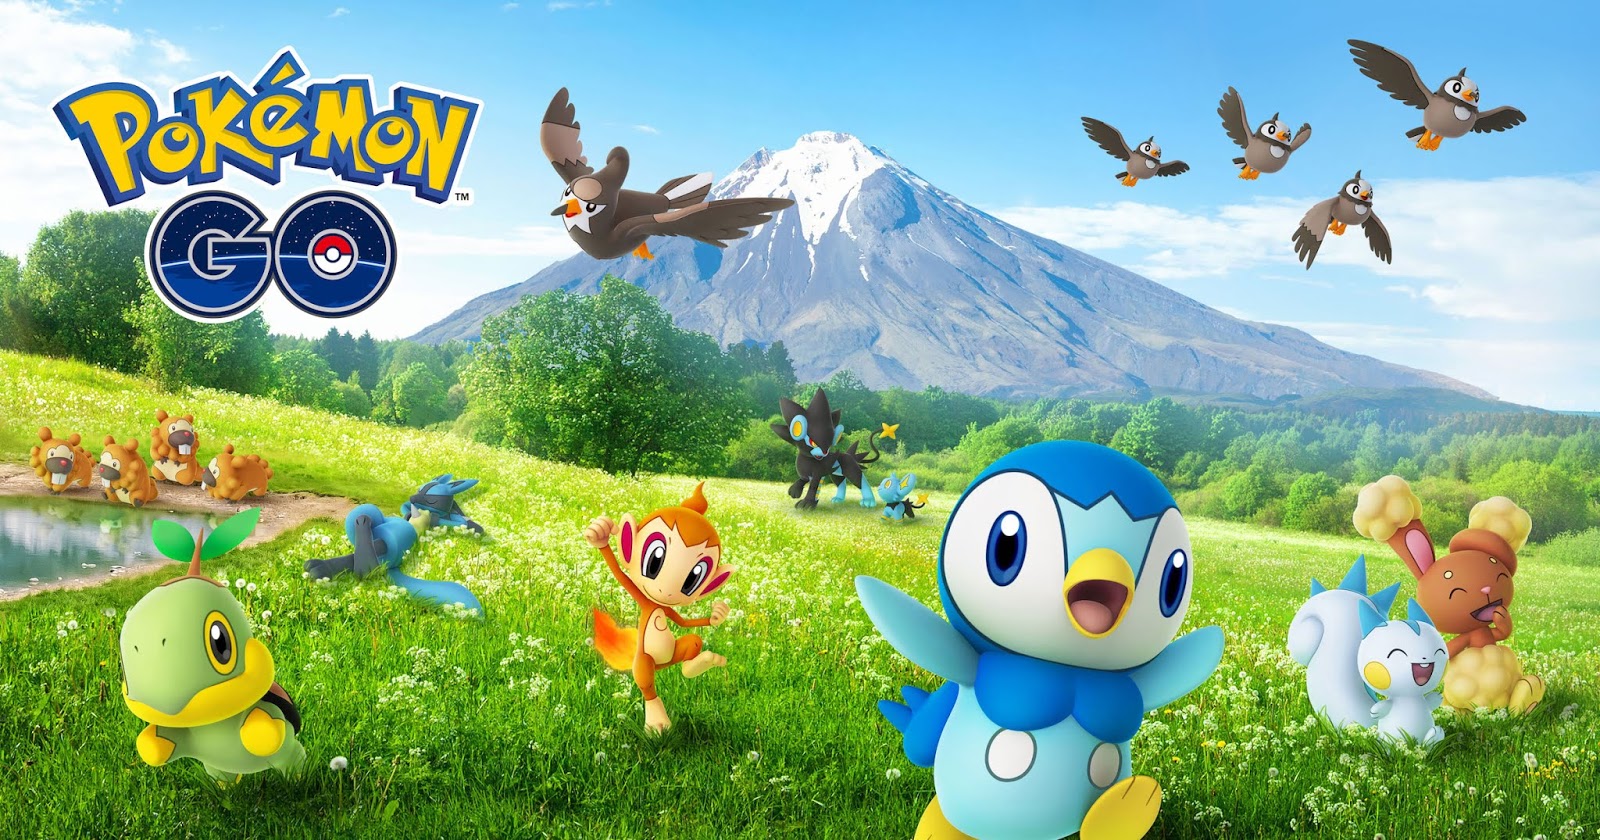 PokéPoa - Pokémon Go em Porto Alegre - Começou o lançamento da 4ª geração!  Isso aí, você que estava aguardando essa notícia pra voltar a ligar o jogo,  chegou a hora: hoje